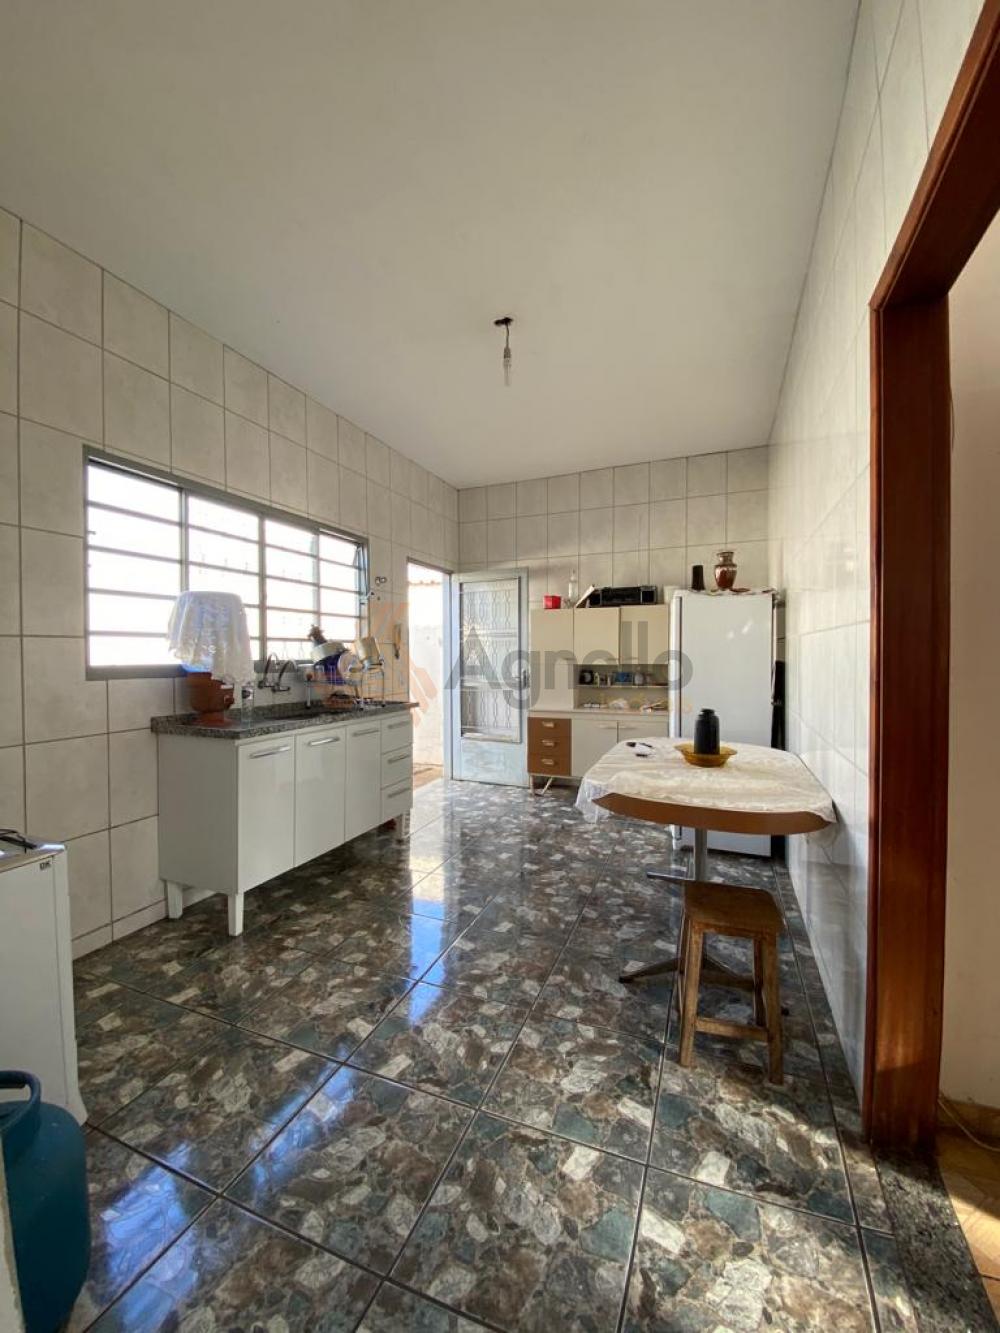 Comprar Casa / Bairro em Franca R$ 215.000,00 - Foto 3